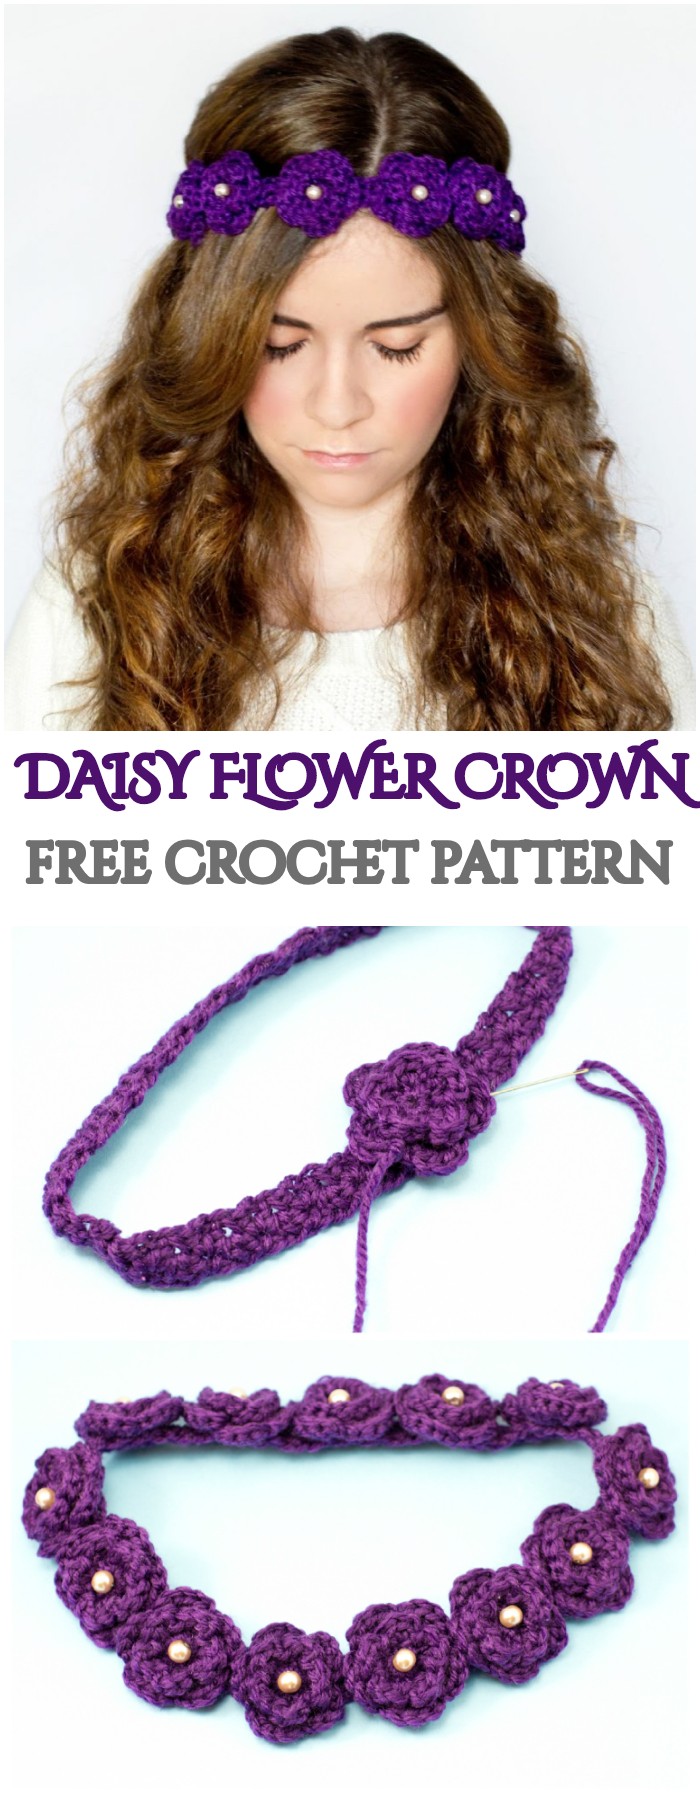 Crochet Daisy Flower Crown